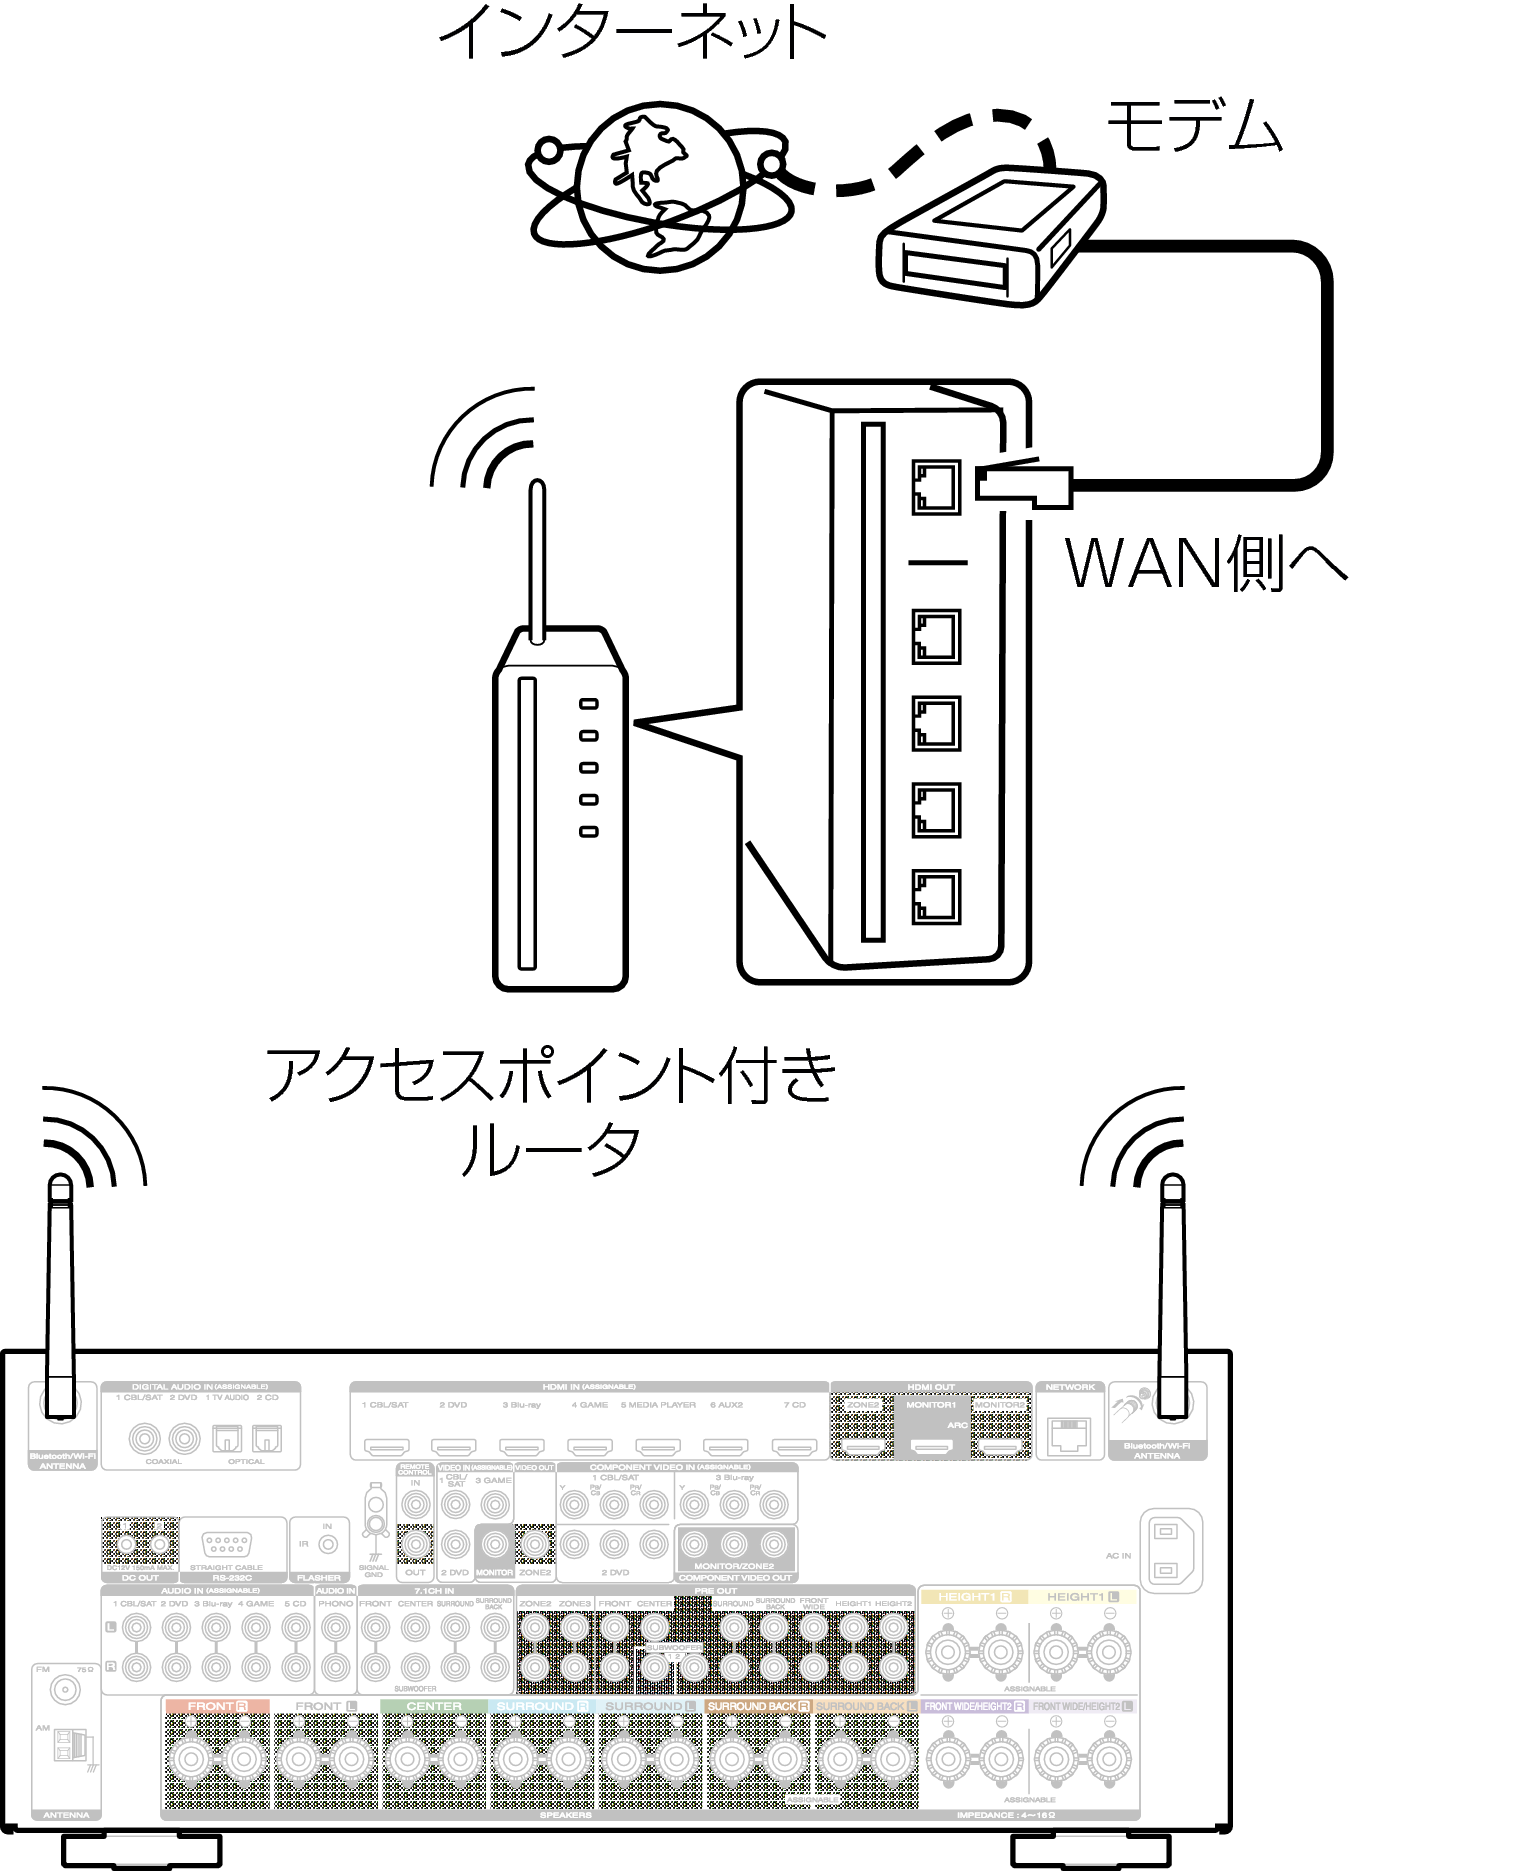 Conne Wireless SR7009N